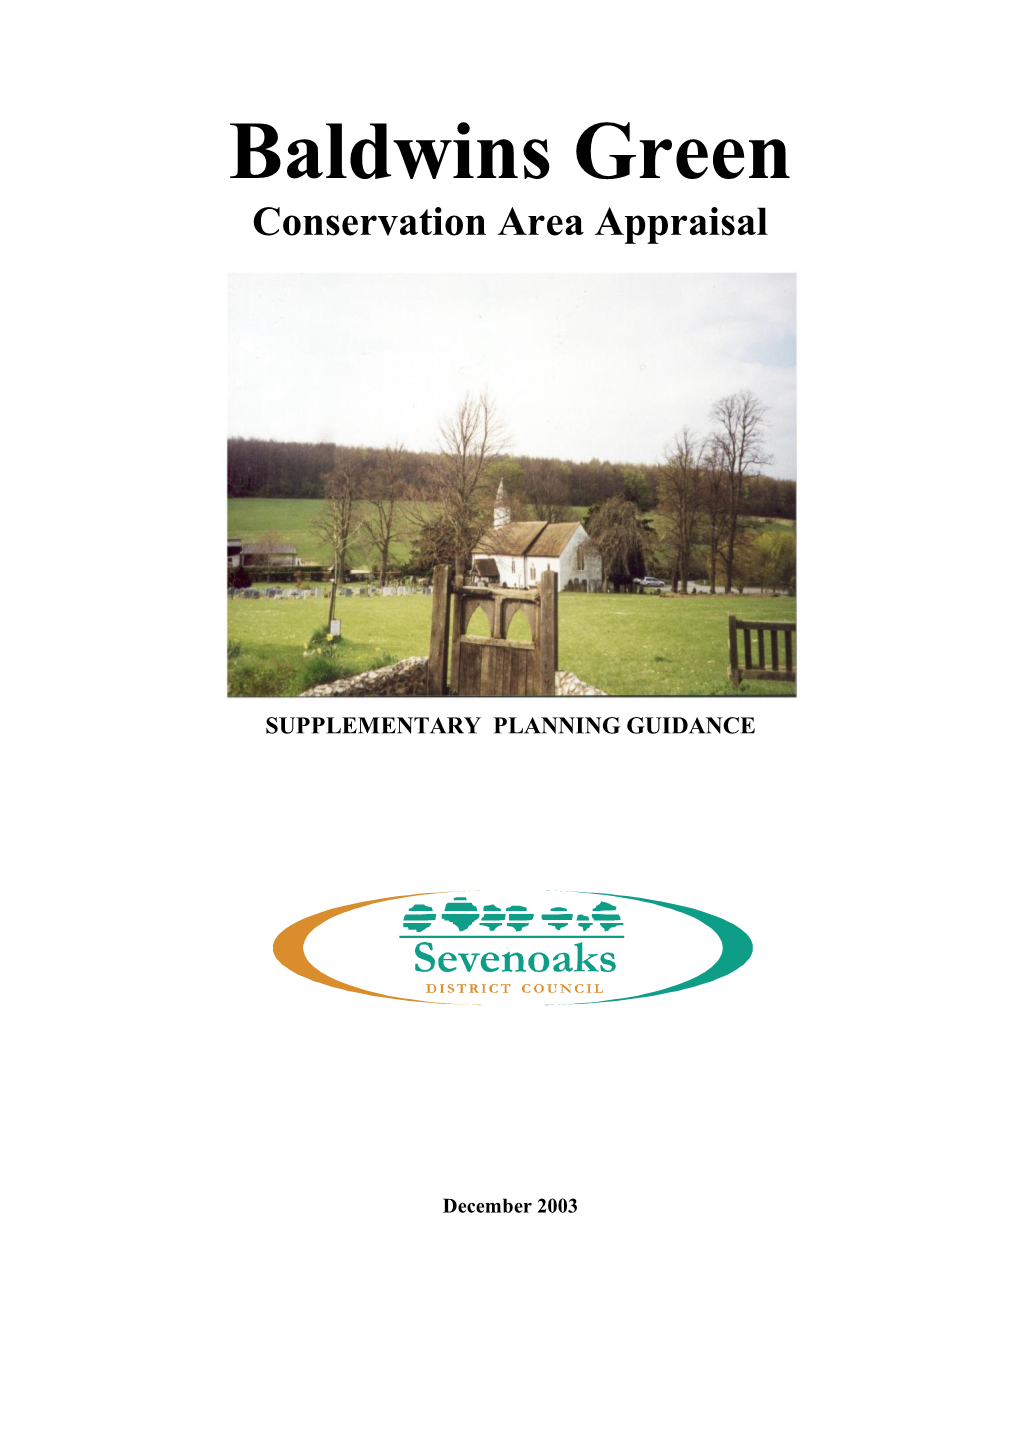 Baldwins Green Conservation Area Appraisal